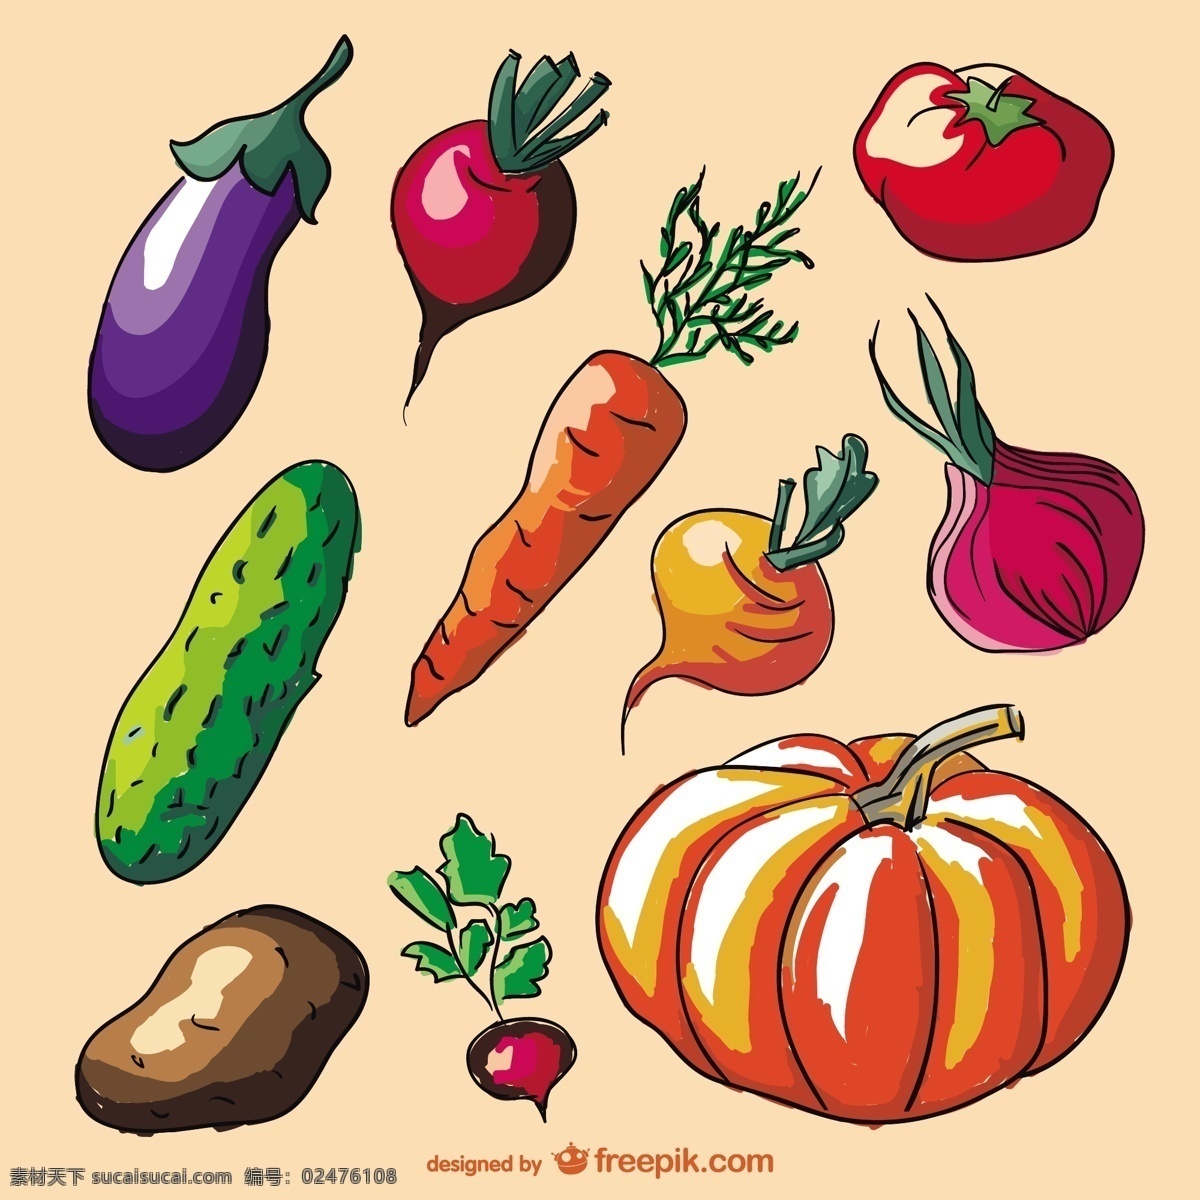 丰富多彩 涂鸦 蔬菜 集 一方面 手绘 色彩丰富 装饰 南瓜 胡萝卜 洋葱 黄瓜 土豆拉 萝卜 茄子 黄色